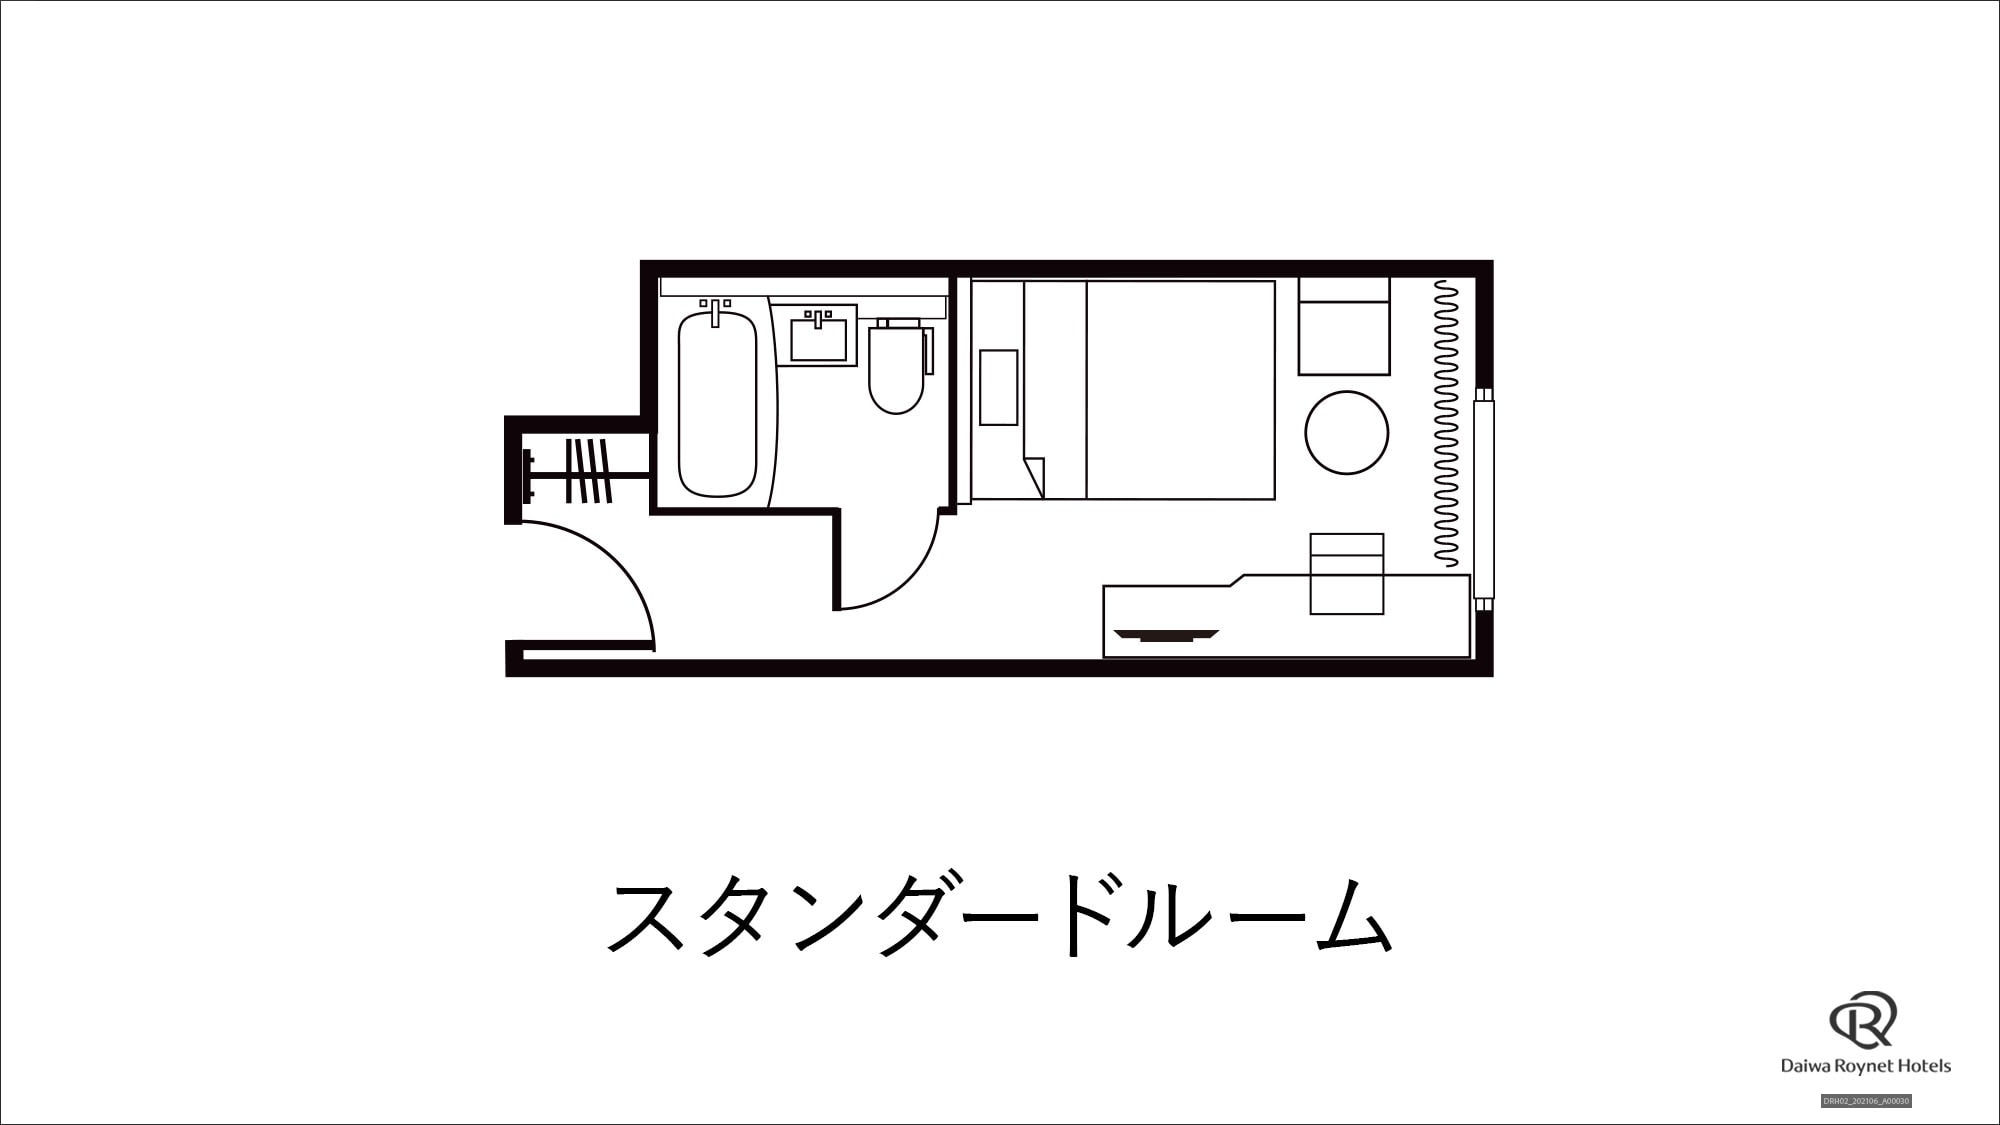 [Standard room] Floor plan